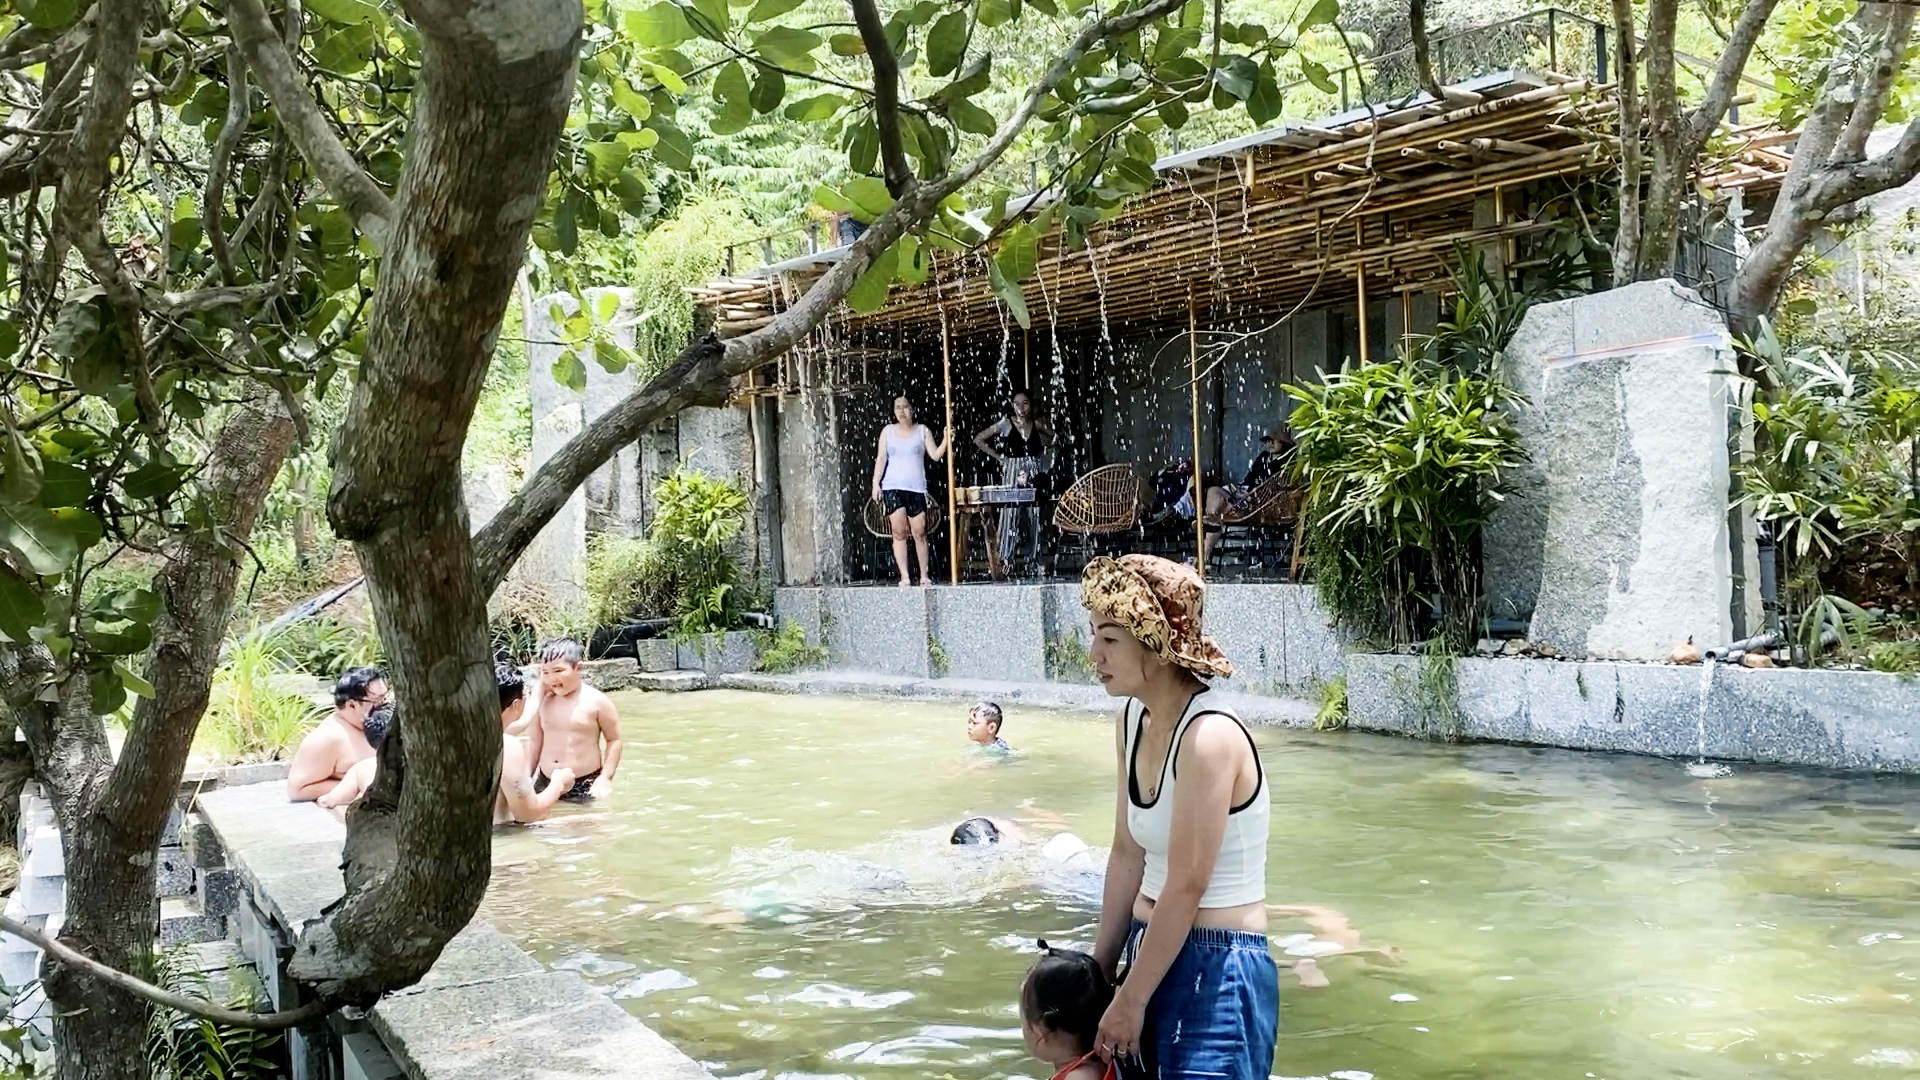 Xu hướng tắm ta ‘hút’ khách Việt: Tắm cùng nhau, trở về với thiên nhiên - Ảnh 1.